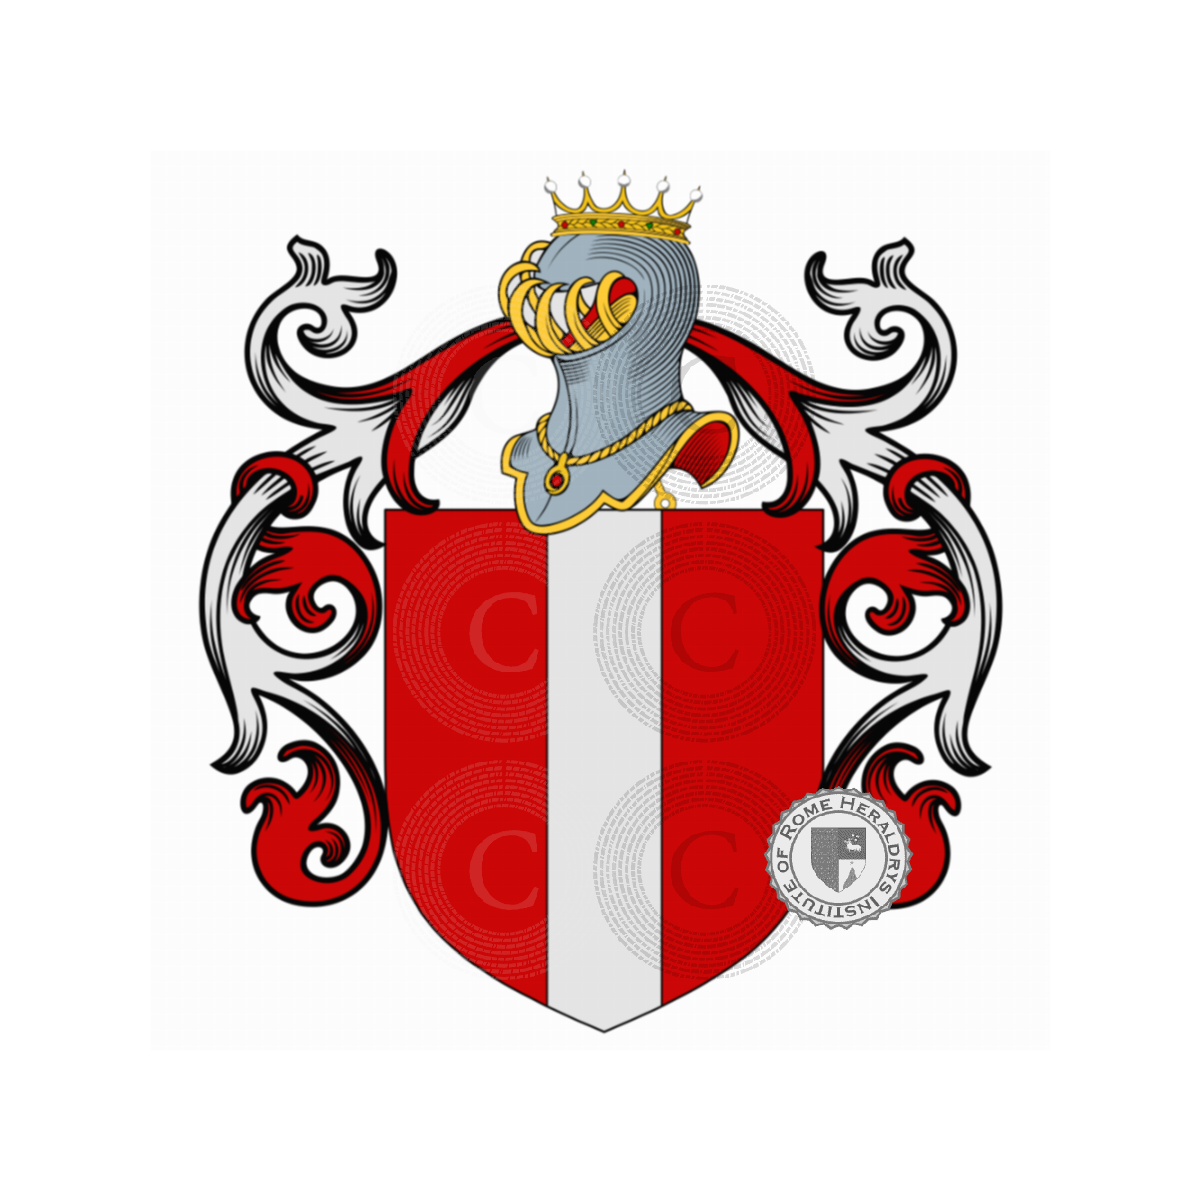 Wappen der FamilieBianca, della Bianca,la Bianca